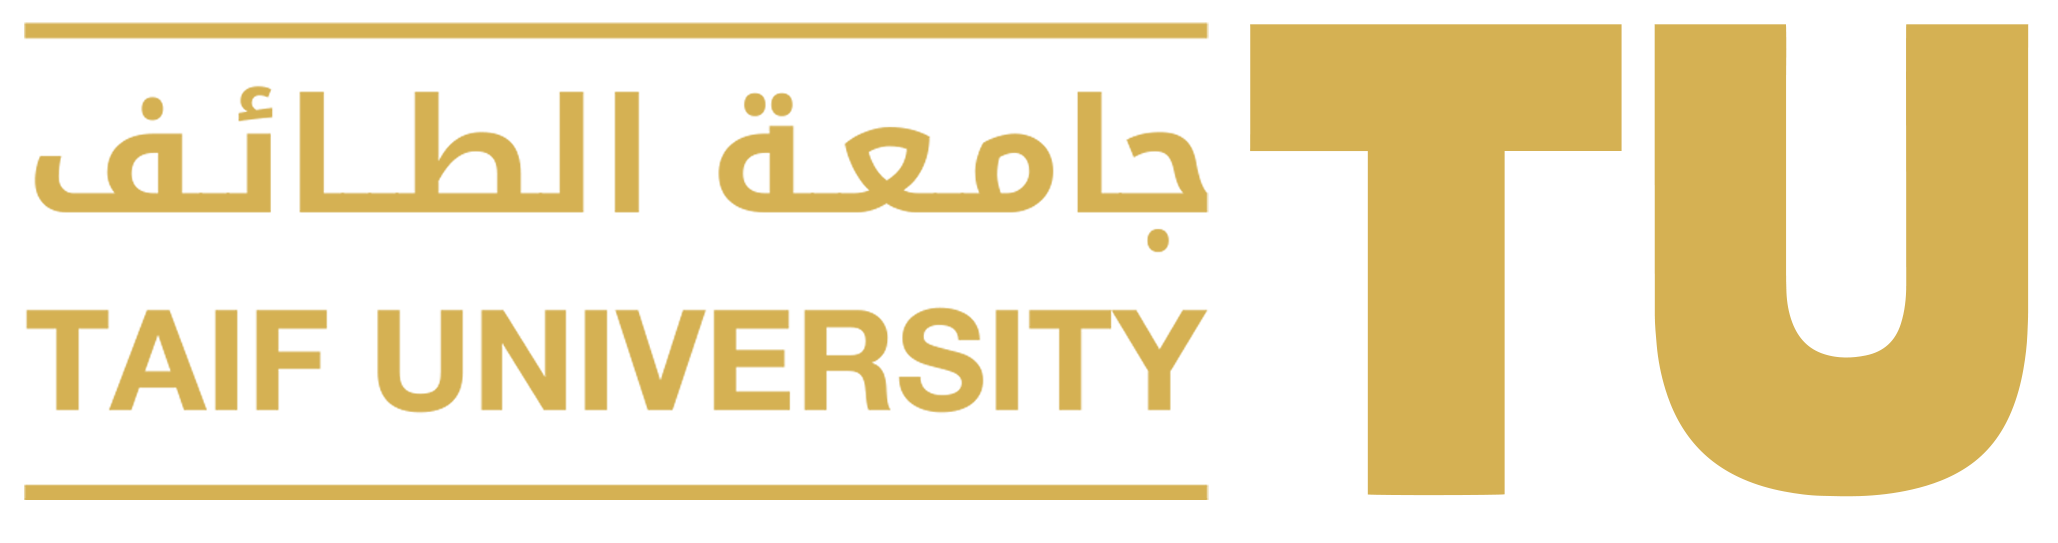 جامعة الطائف نبذة عن الجامعة